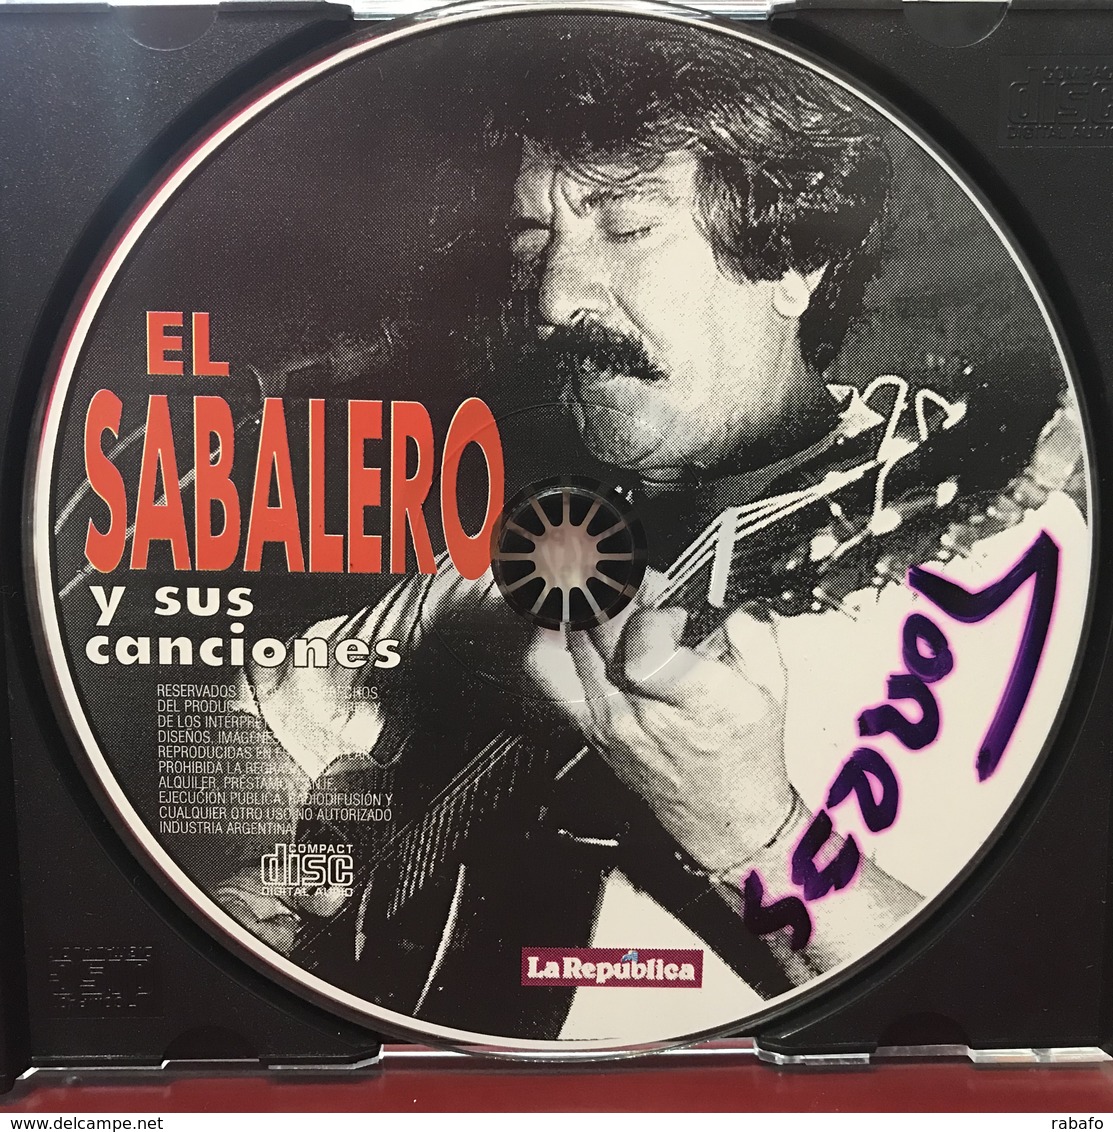 CD De José Carbajal Alias El Sabalero - Música Del Mundo